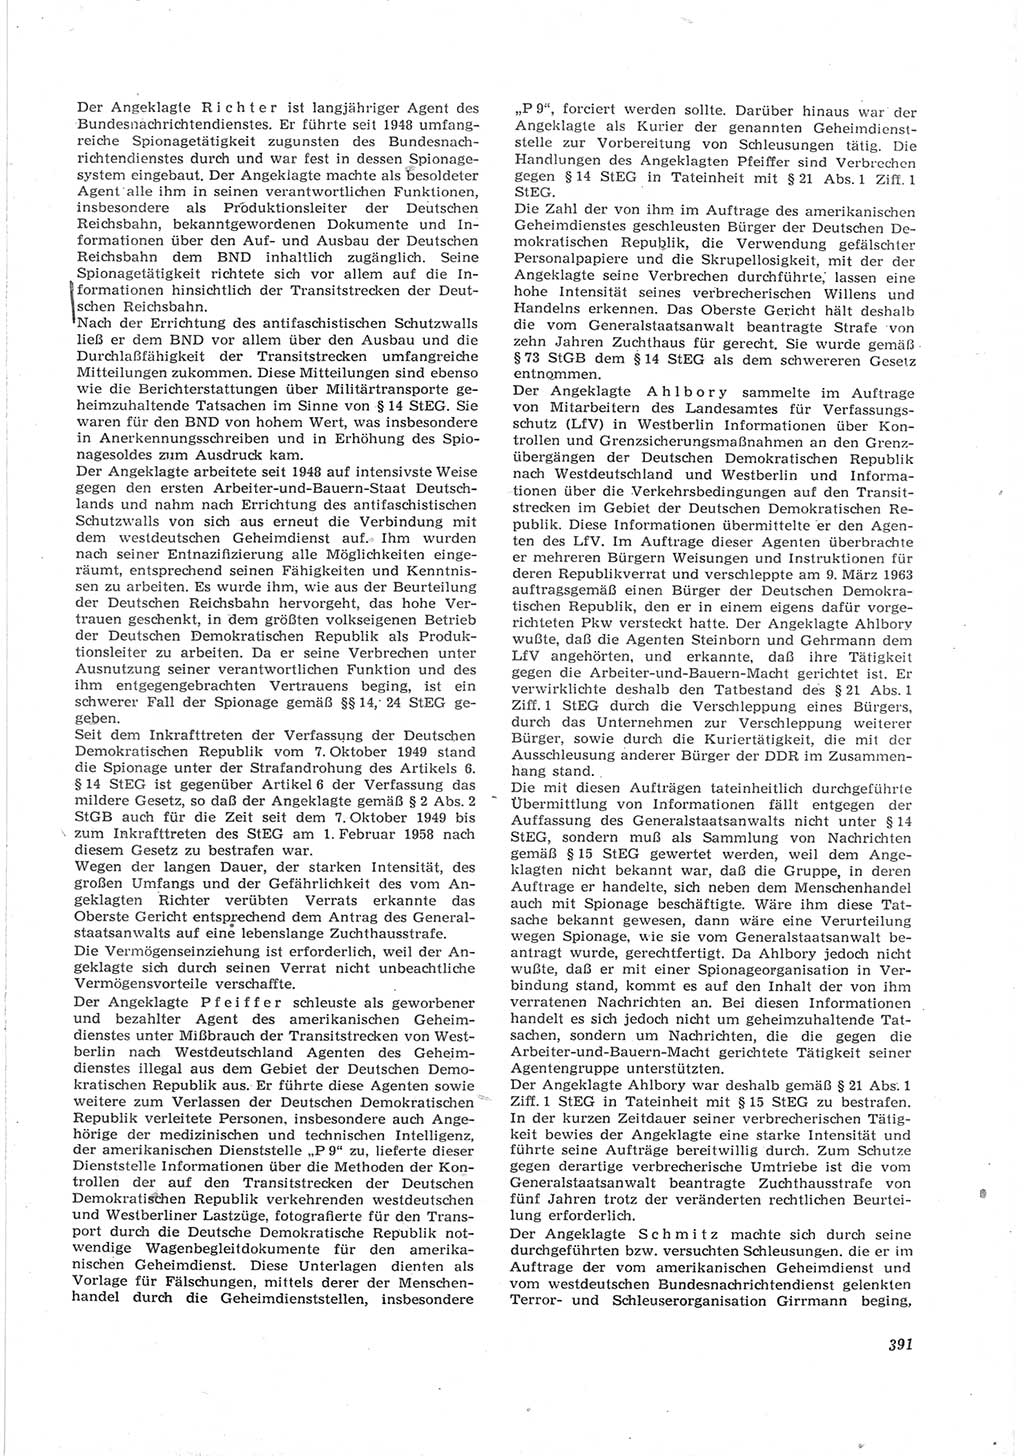 Neue Justiz (NJ), Zeitschrift für Recht und Rechtswissenschaft [Deutsche Demokratische Republik (DDR)], 17. Jahrgang 1963, Seite 391 (NJ DDR 1963, S. 391)